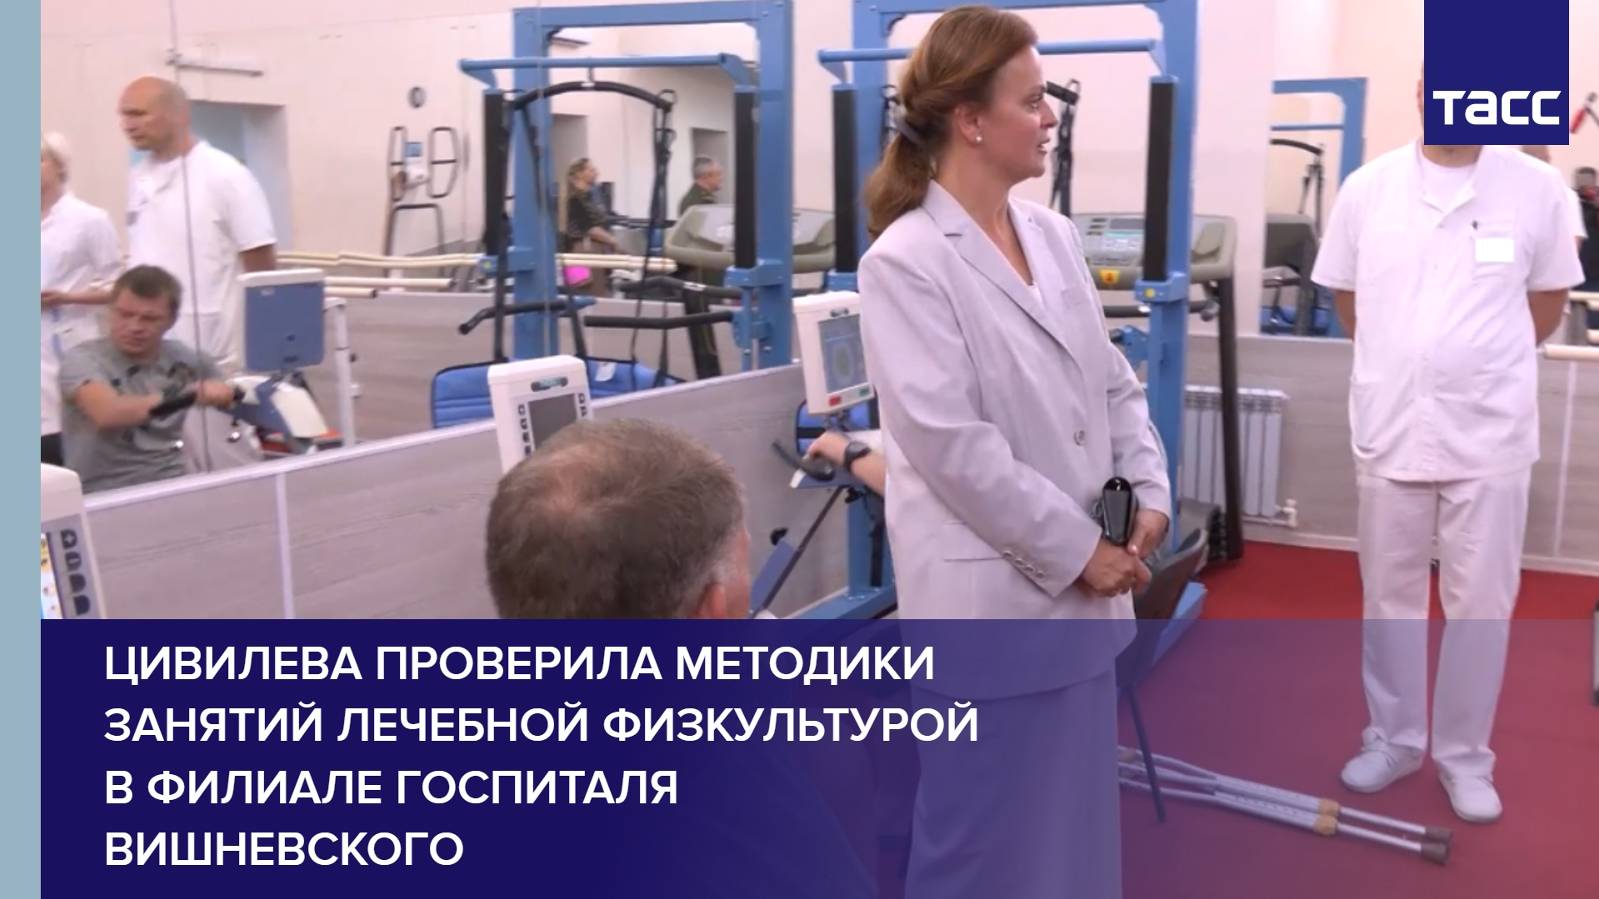 Цивилева проверила методики занятий лечебной физкультурой в филиале госпиталя Вишневского